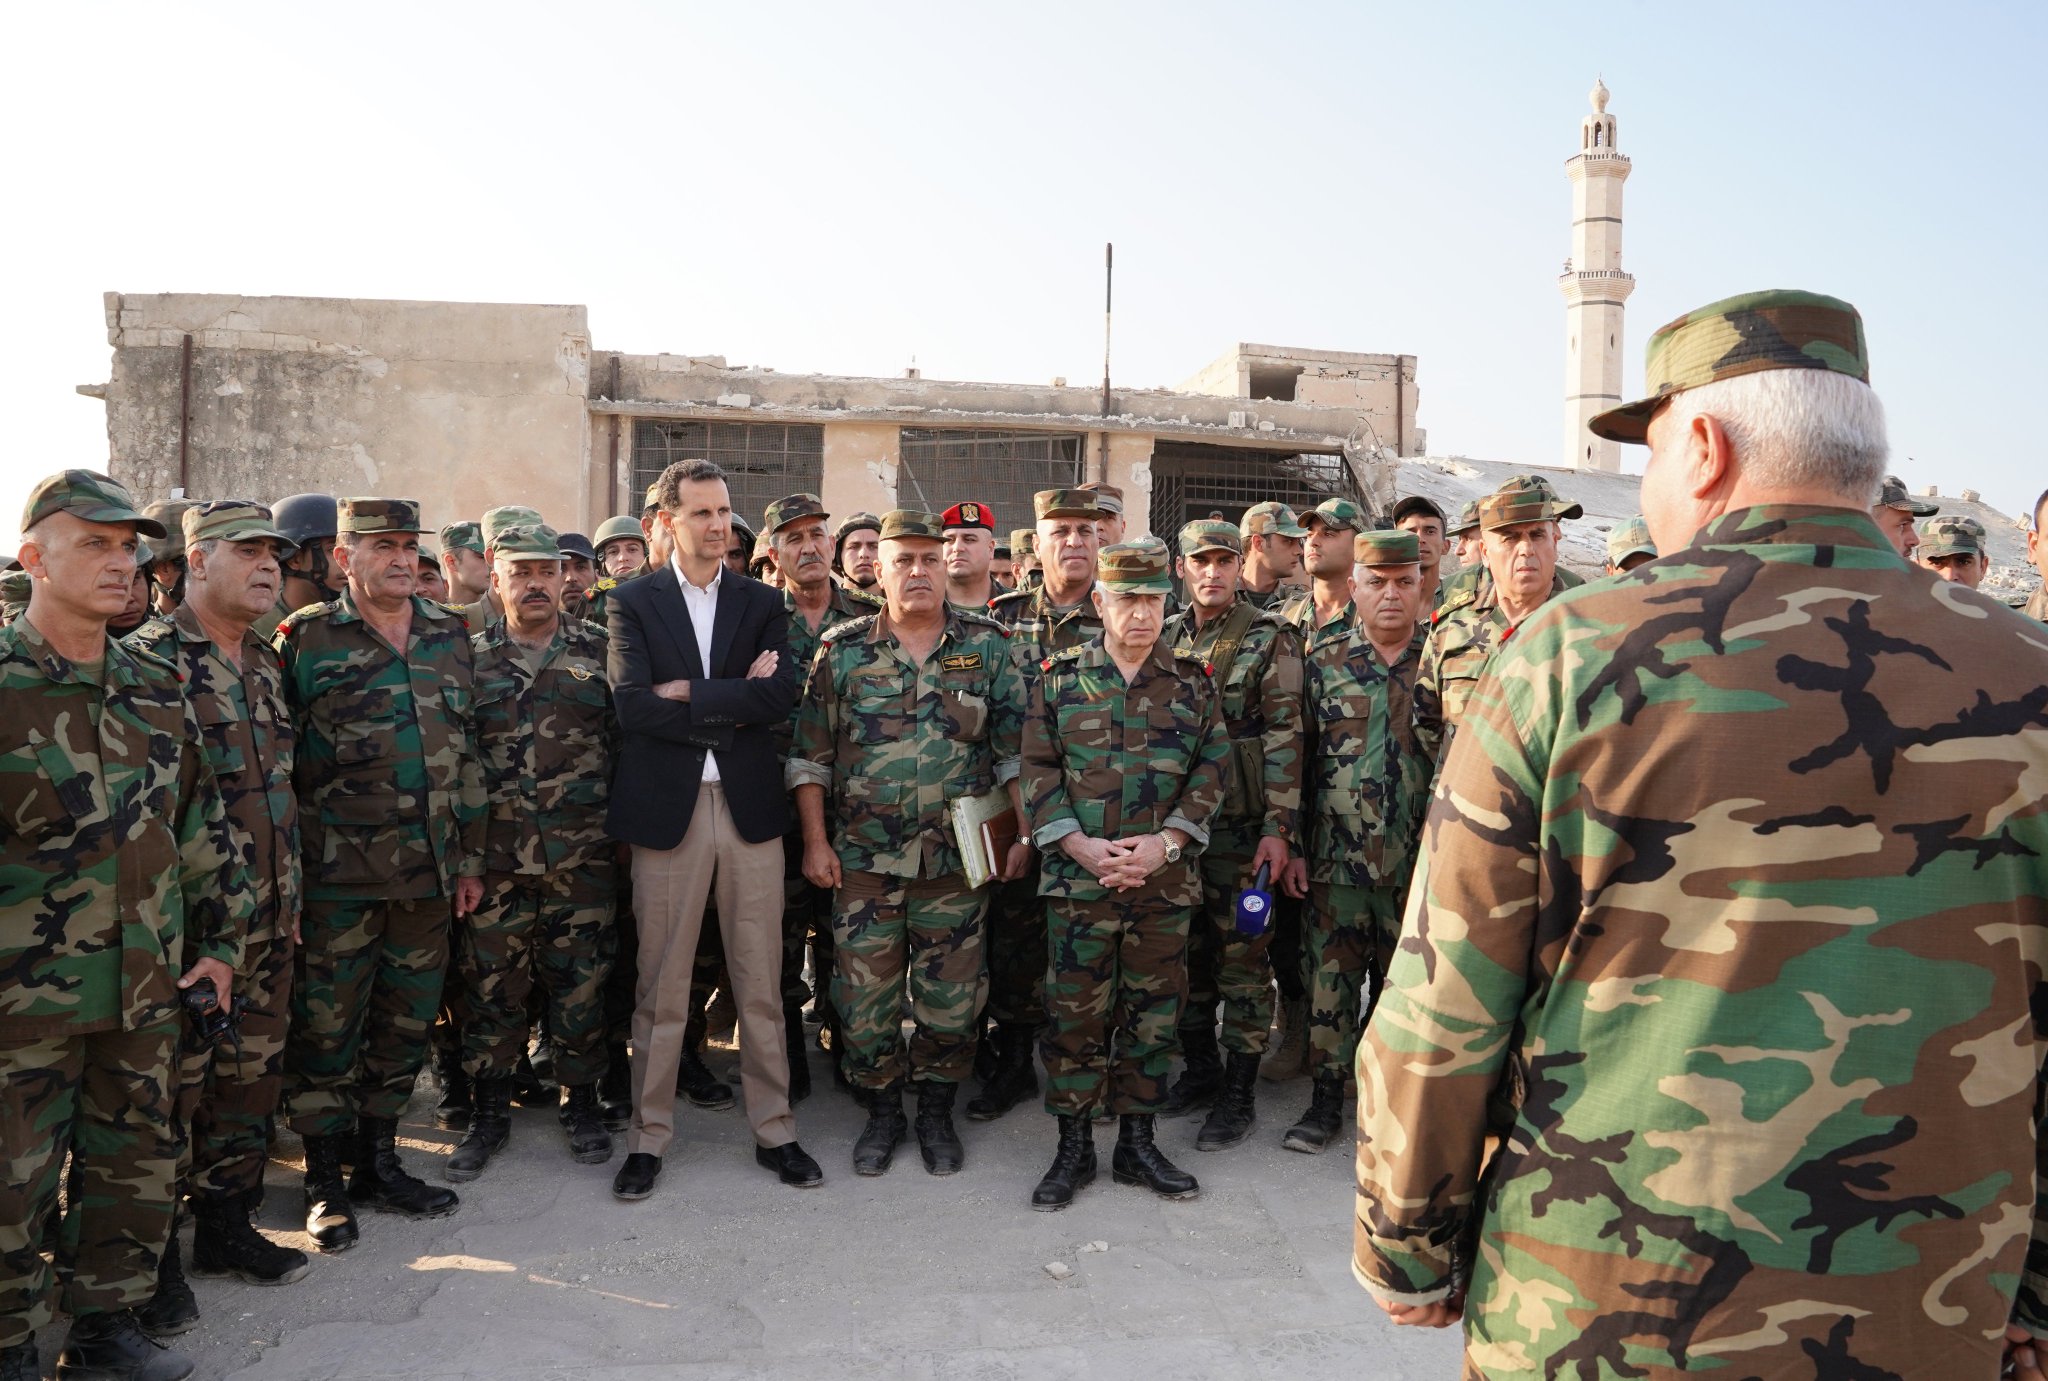 За сирию и башара. Армия Башара Асада. Сирия Башар Асад. Башар Асад 2011.